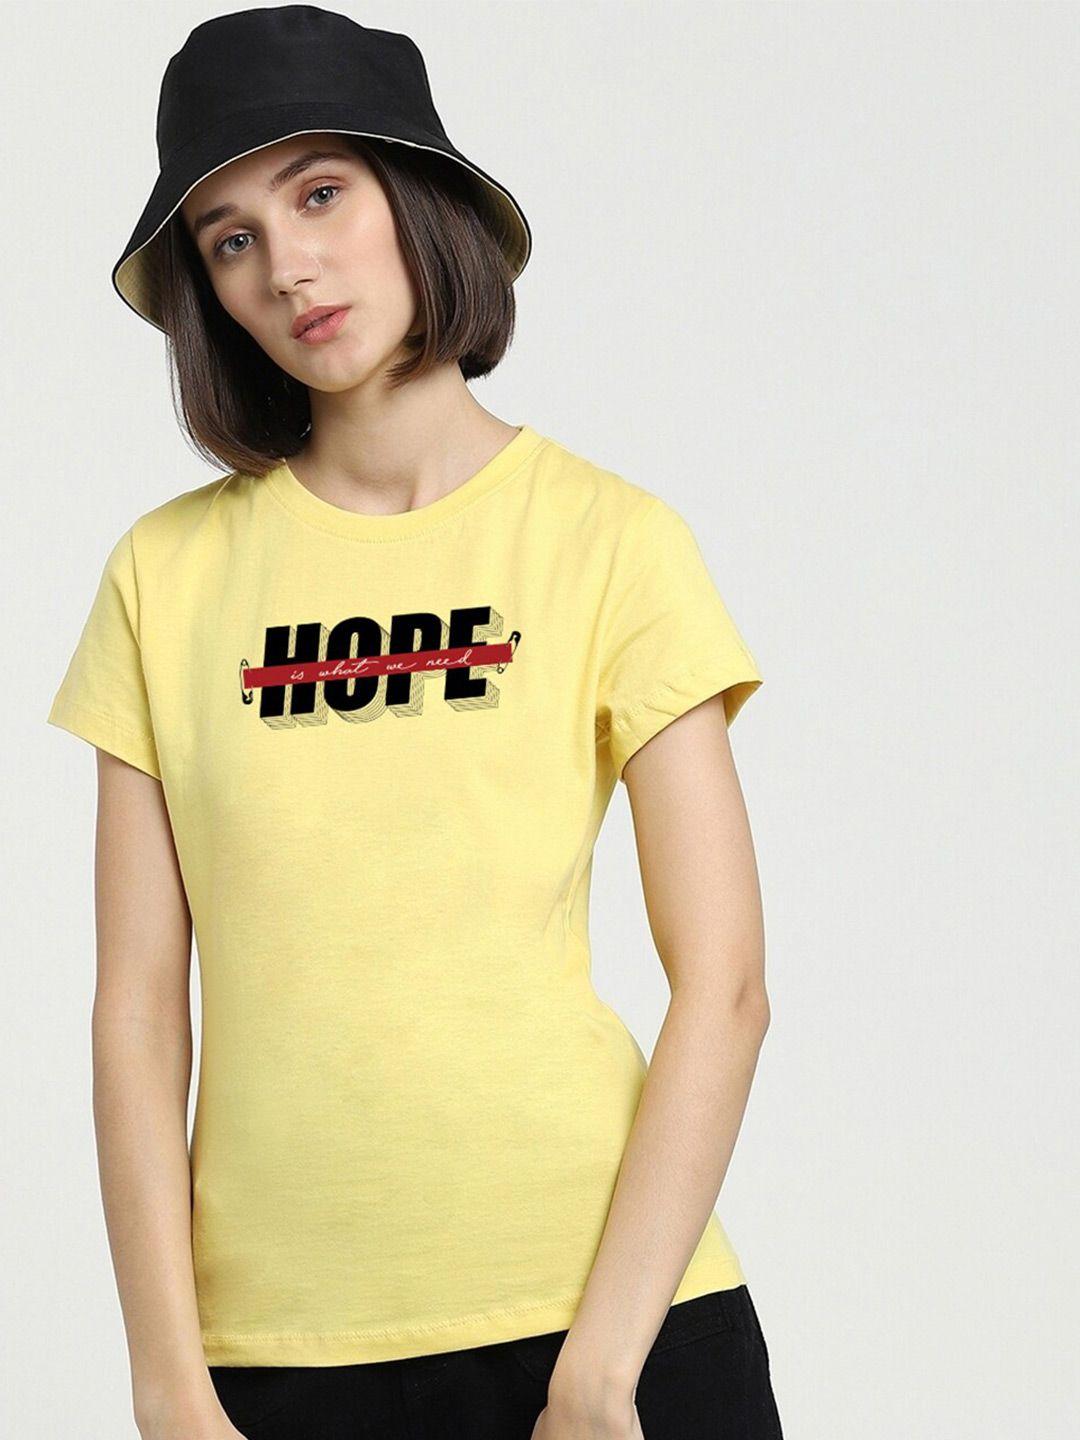 bewakoof yellow hope need typography t-shirt